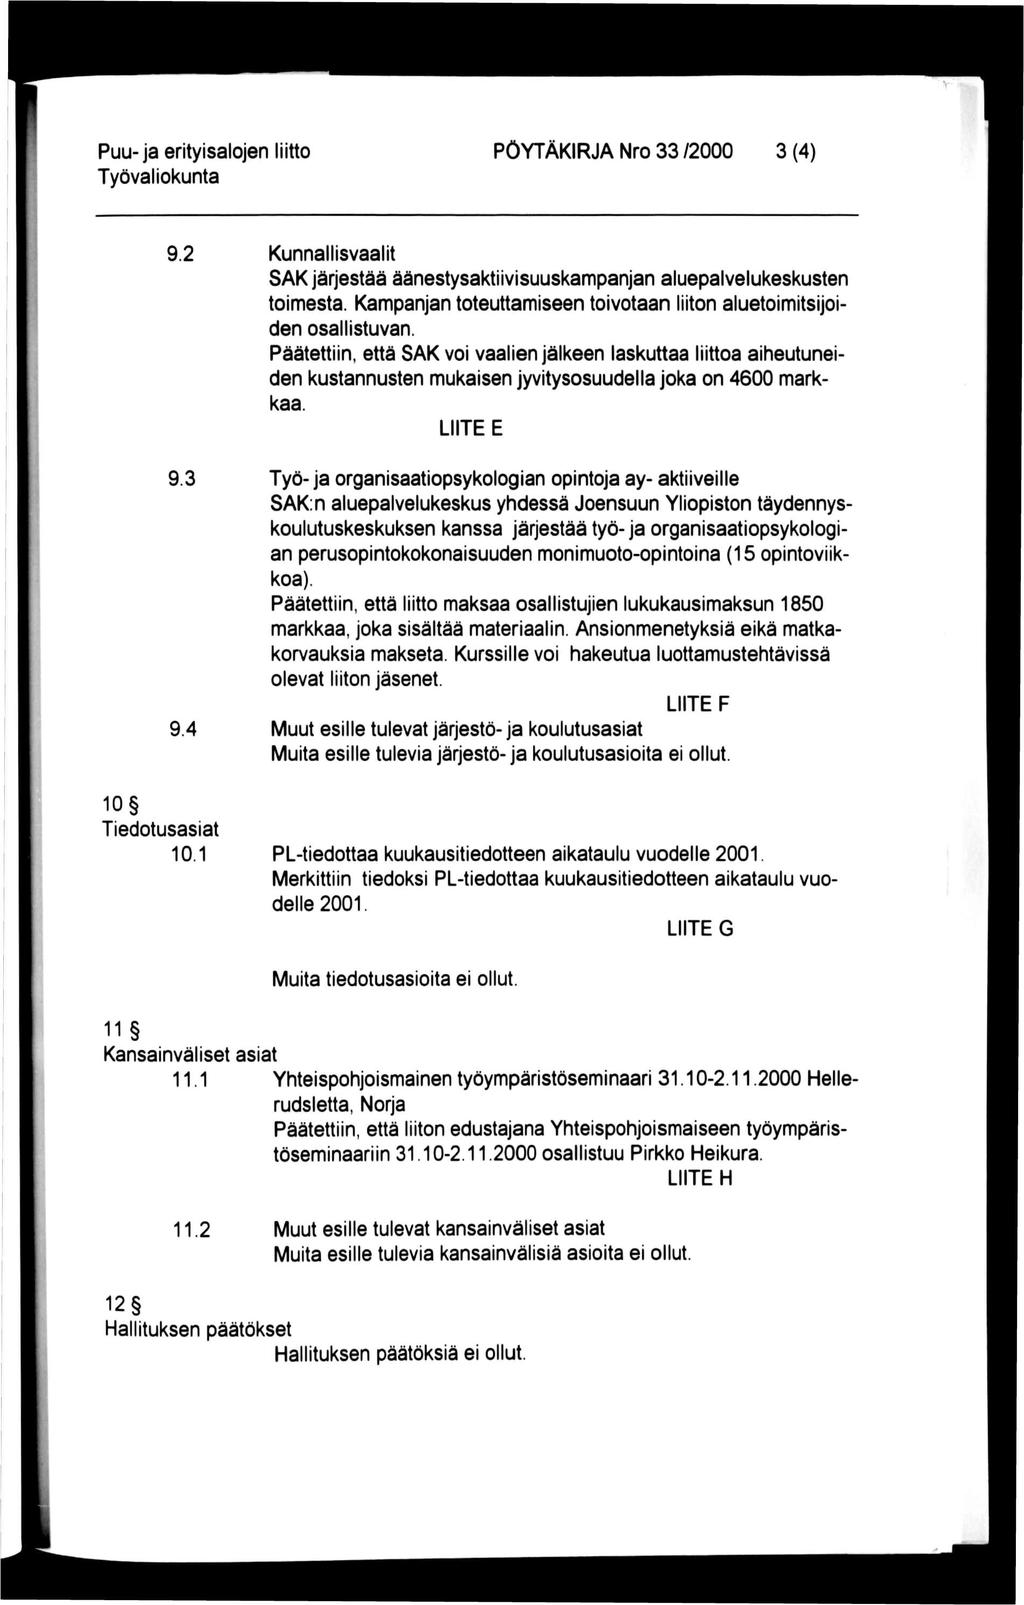 Puu-ja erityisalojen liitto PÖYTÄKIRJA Nro 33 /2000 3 (4) 9.2 Kunnallisvaalit SAK järjestää äänestysaktiivisuuskampanjan aluepalvelukeskusten toimesta.